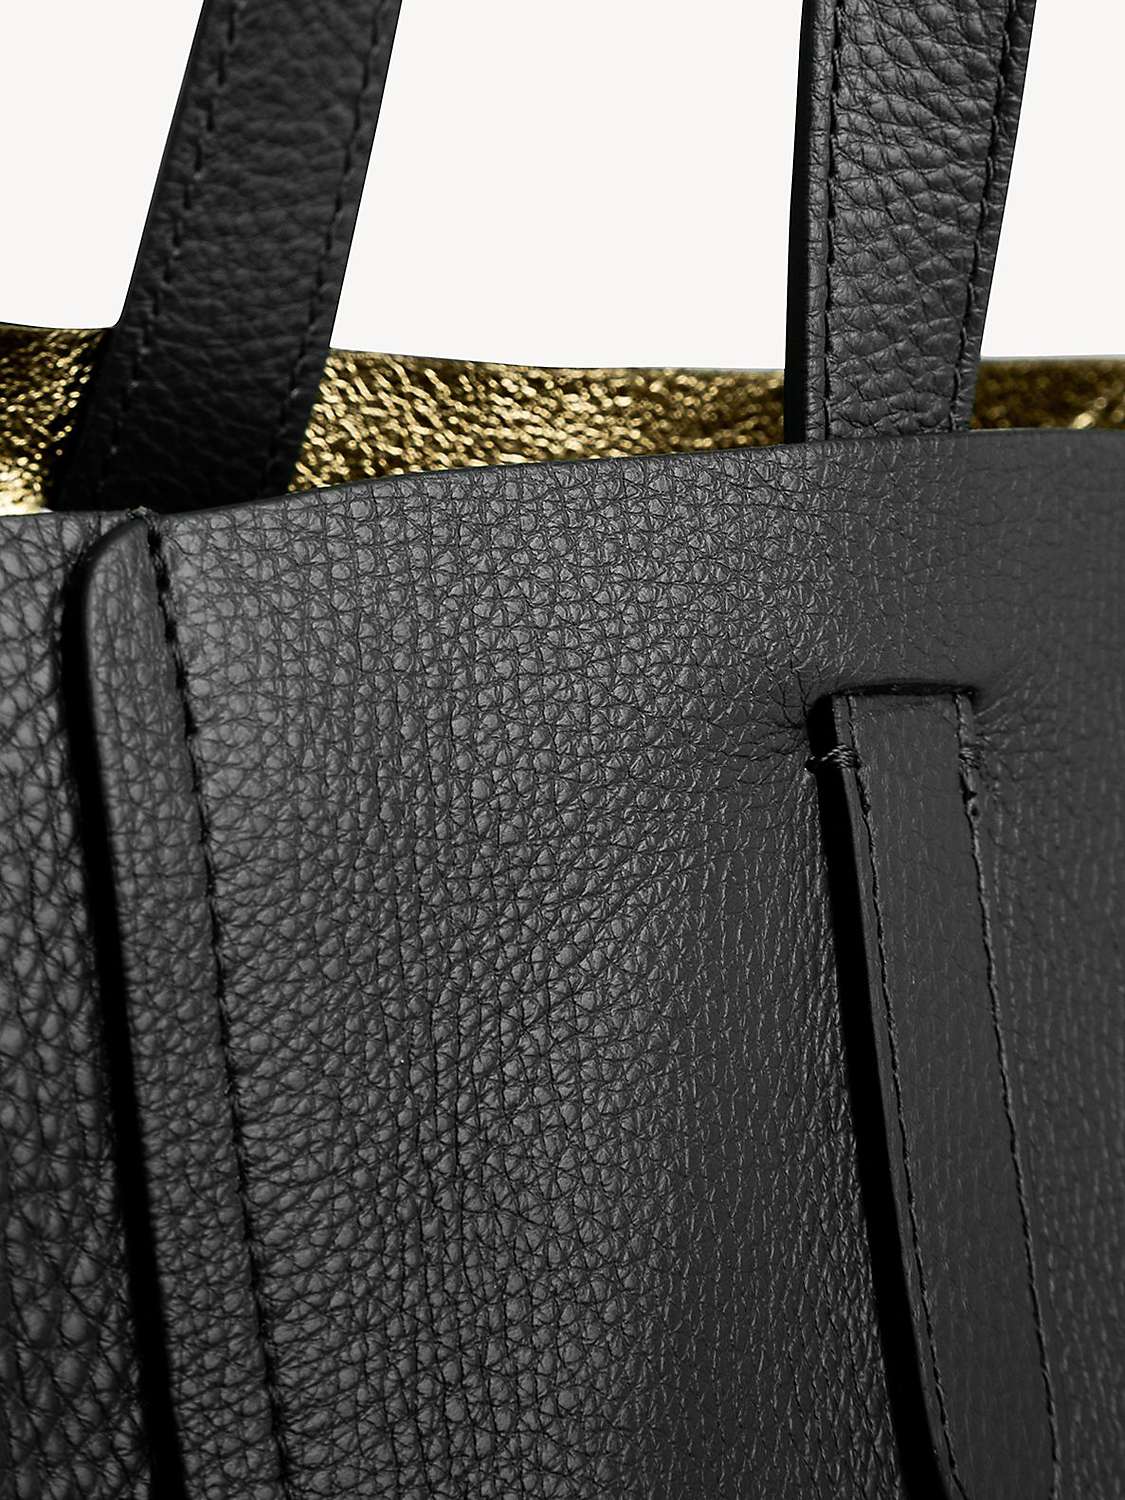 Buy Gerard Darel Simple 2 Leather Shopper Bag, Black/Gold Online at johnlewis.com